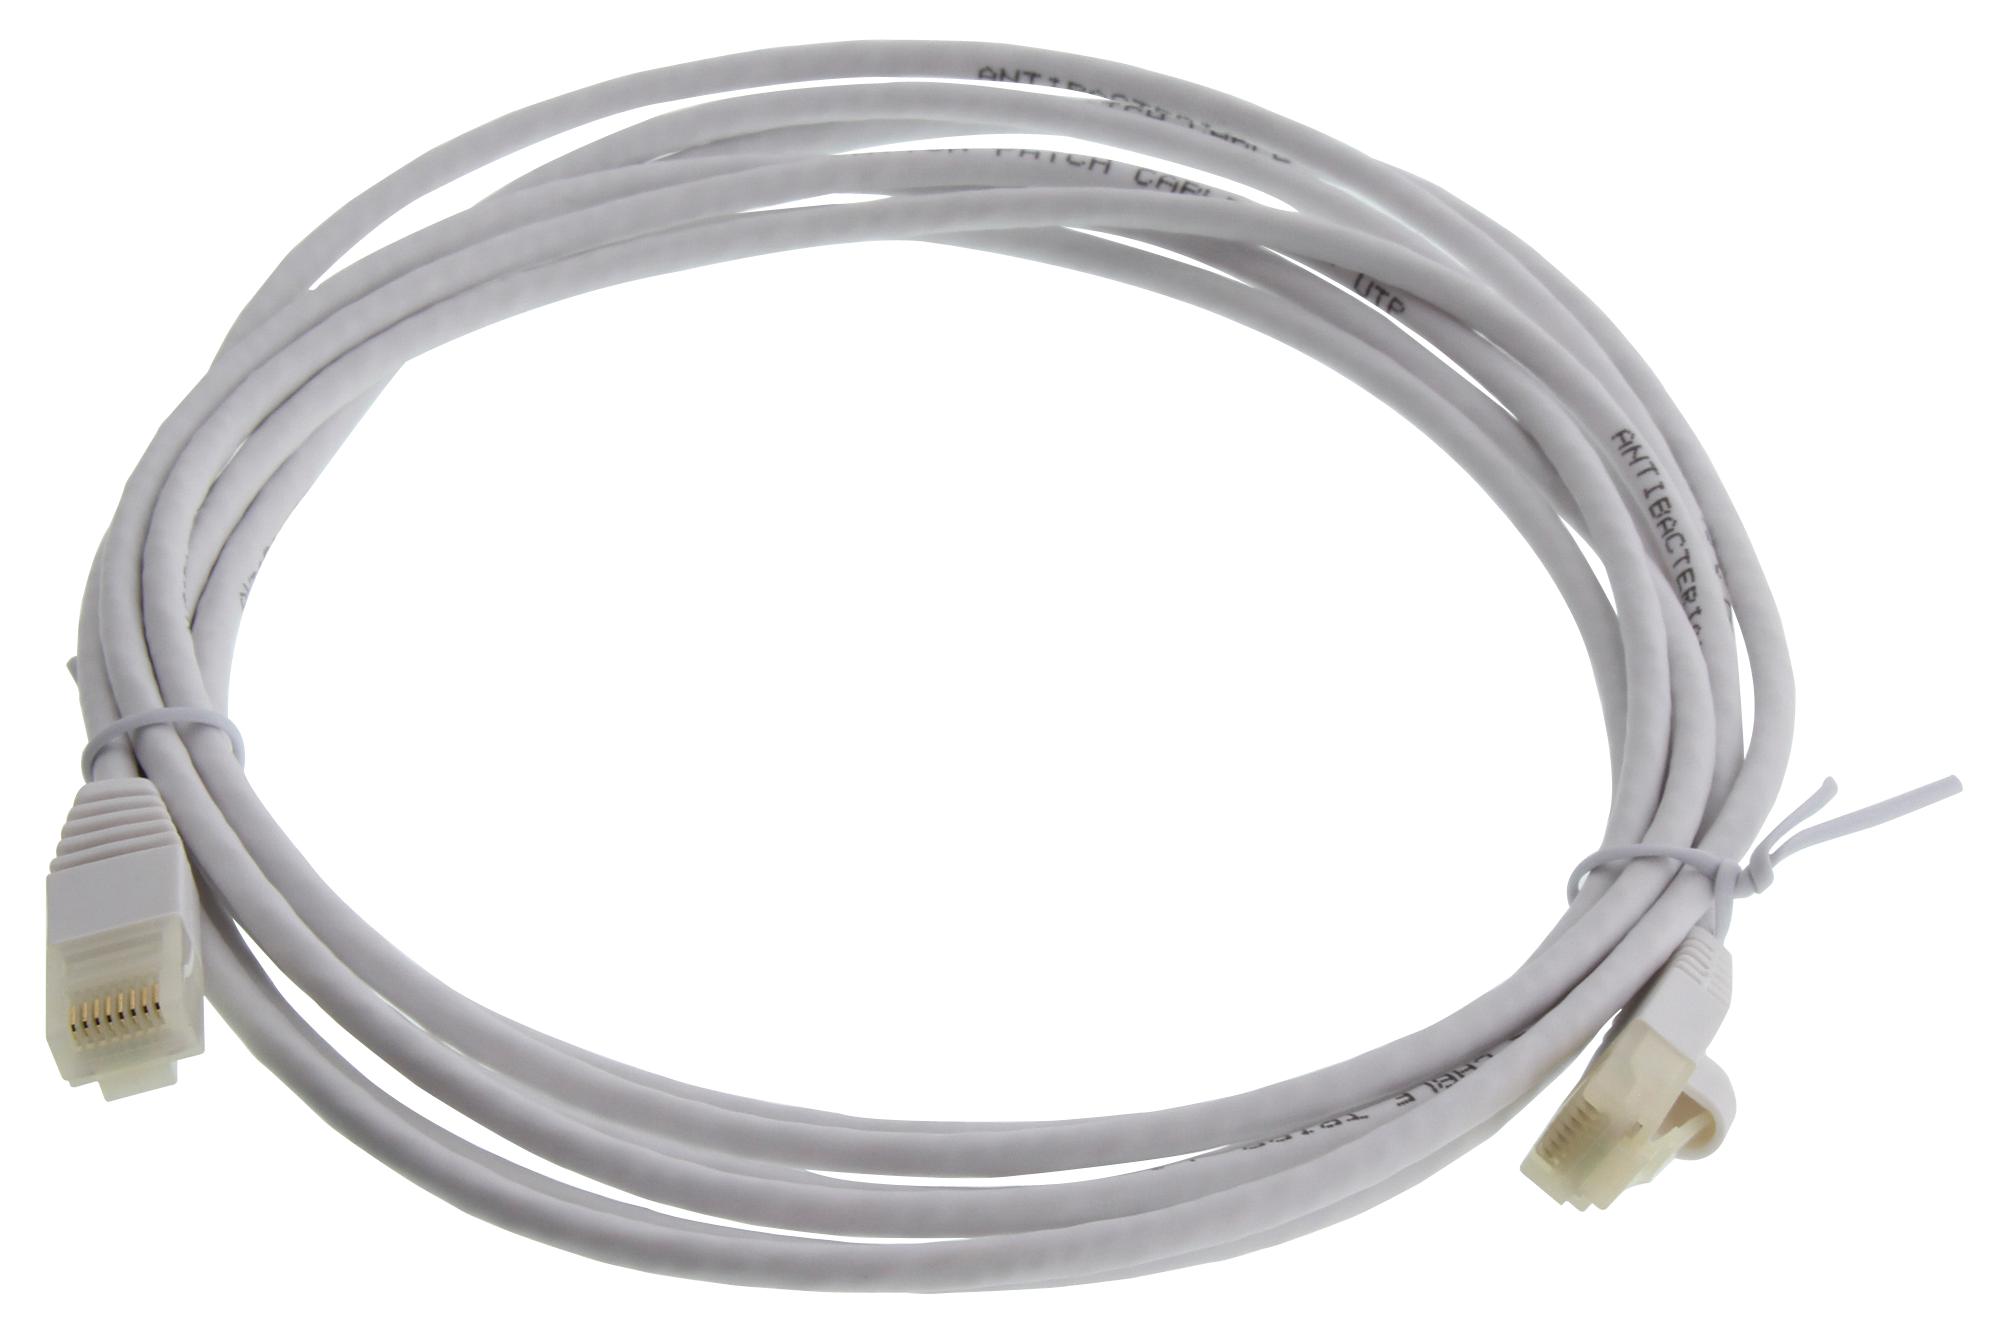 Eaton Tripp Lite N261Ab-S10-Wh Enet Cable, Rj45 Plug-Plug, 10Ft, White